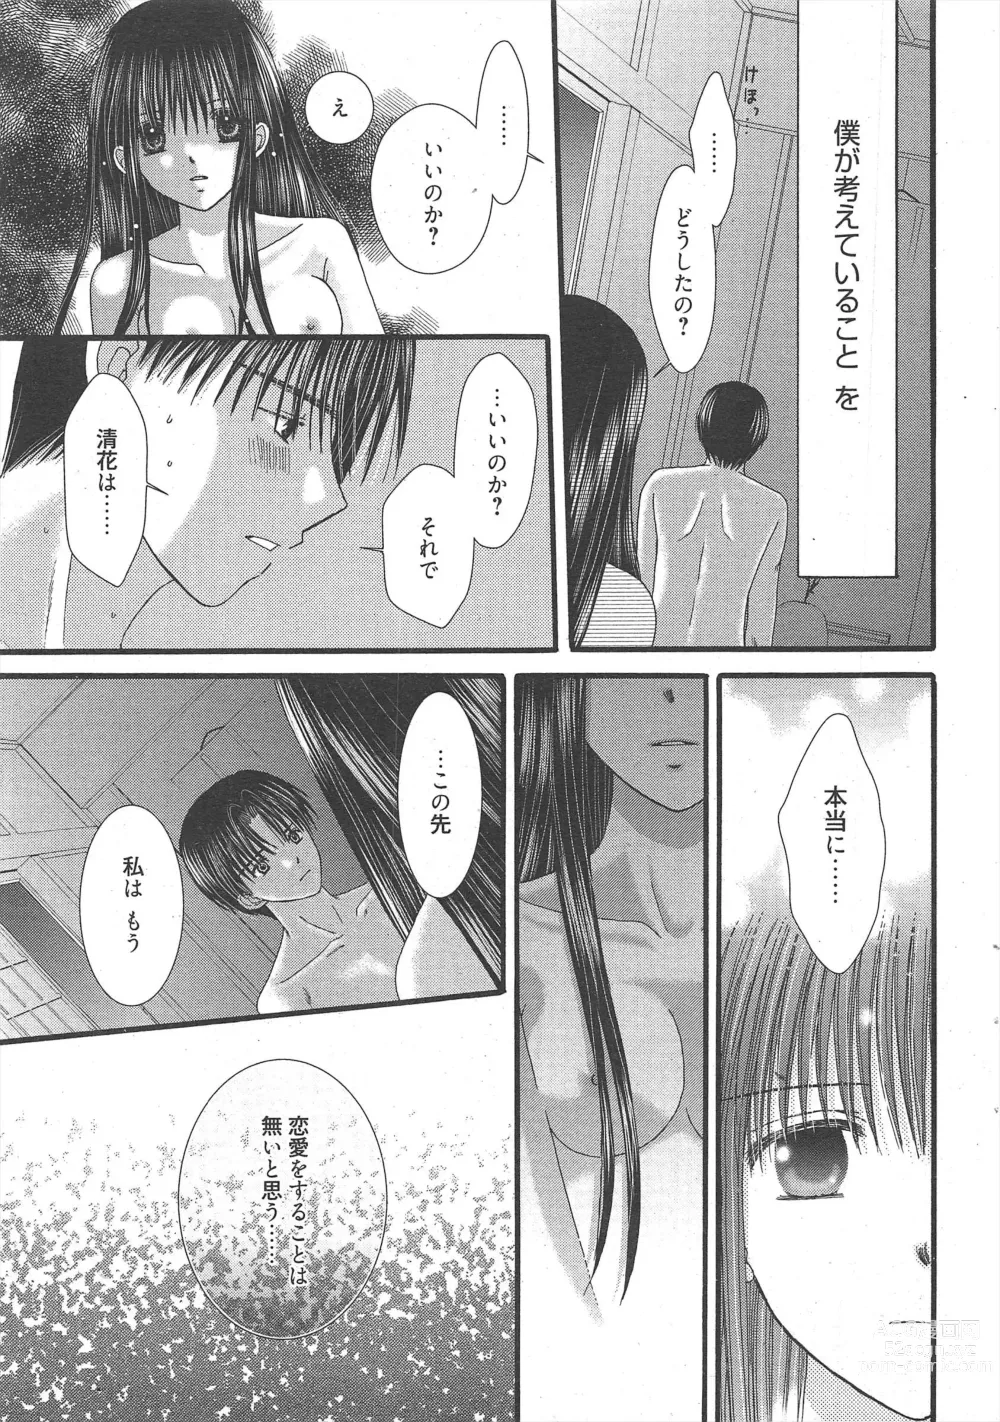 Page 15 of manga Manga Bangaichi 2011-03